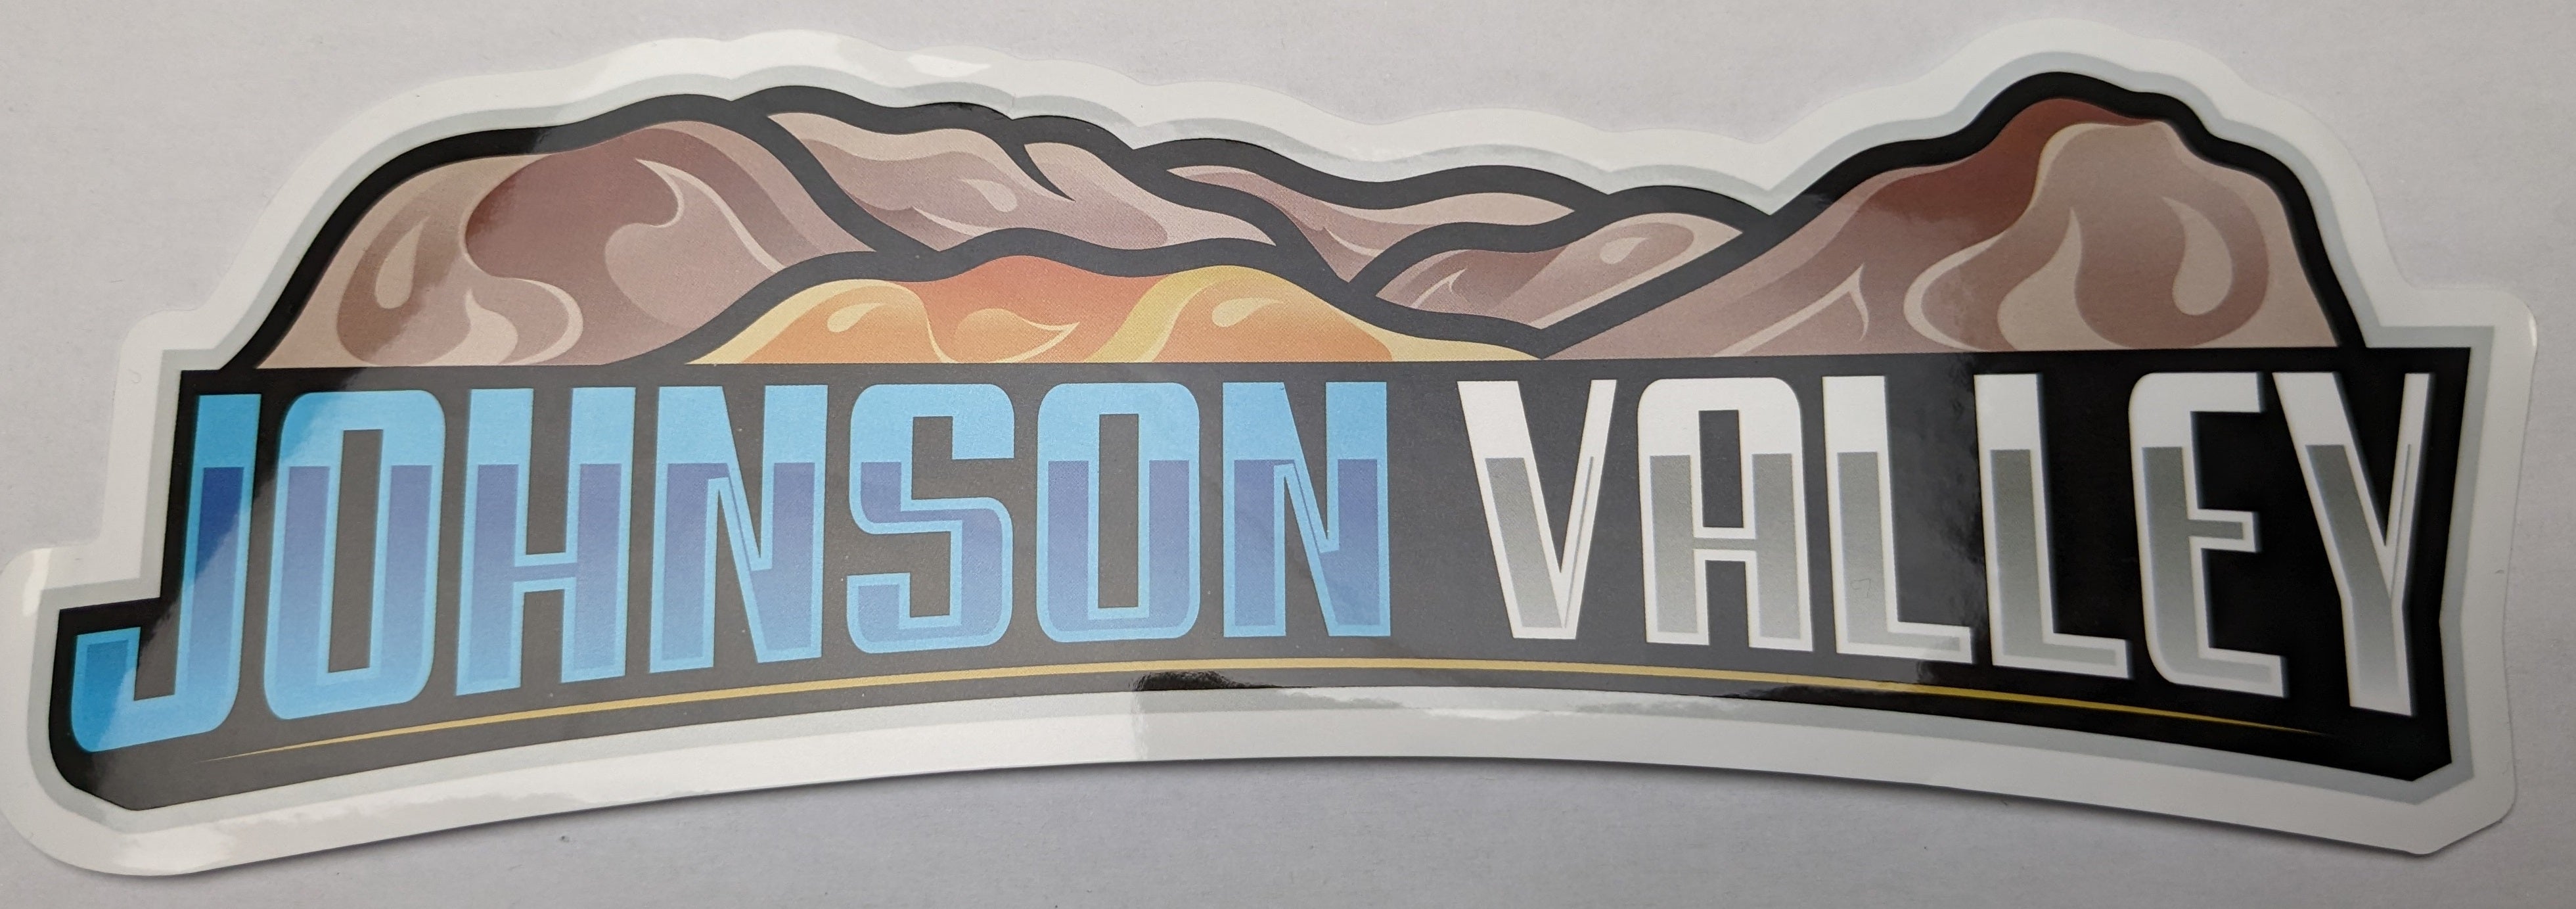 Johnson Valley Sticker